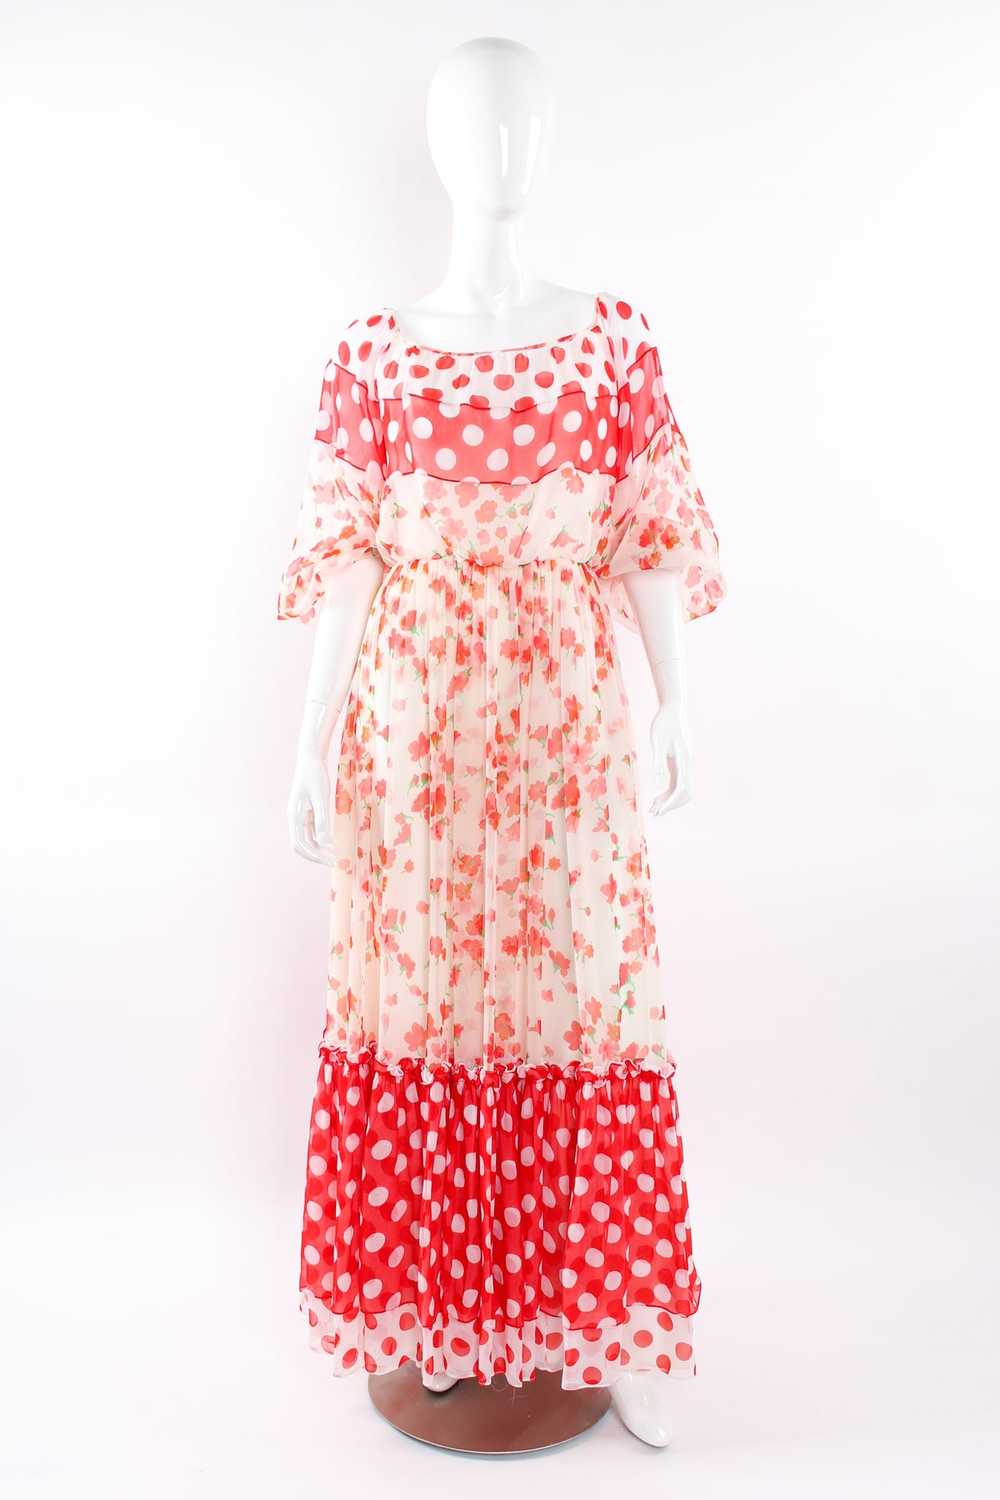 MIGNON Blooming Polka Dot Dress - image 5